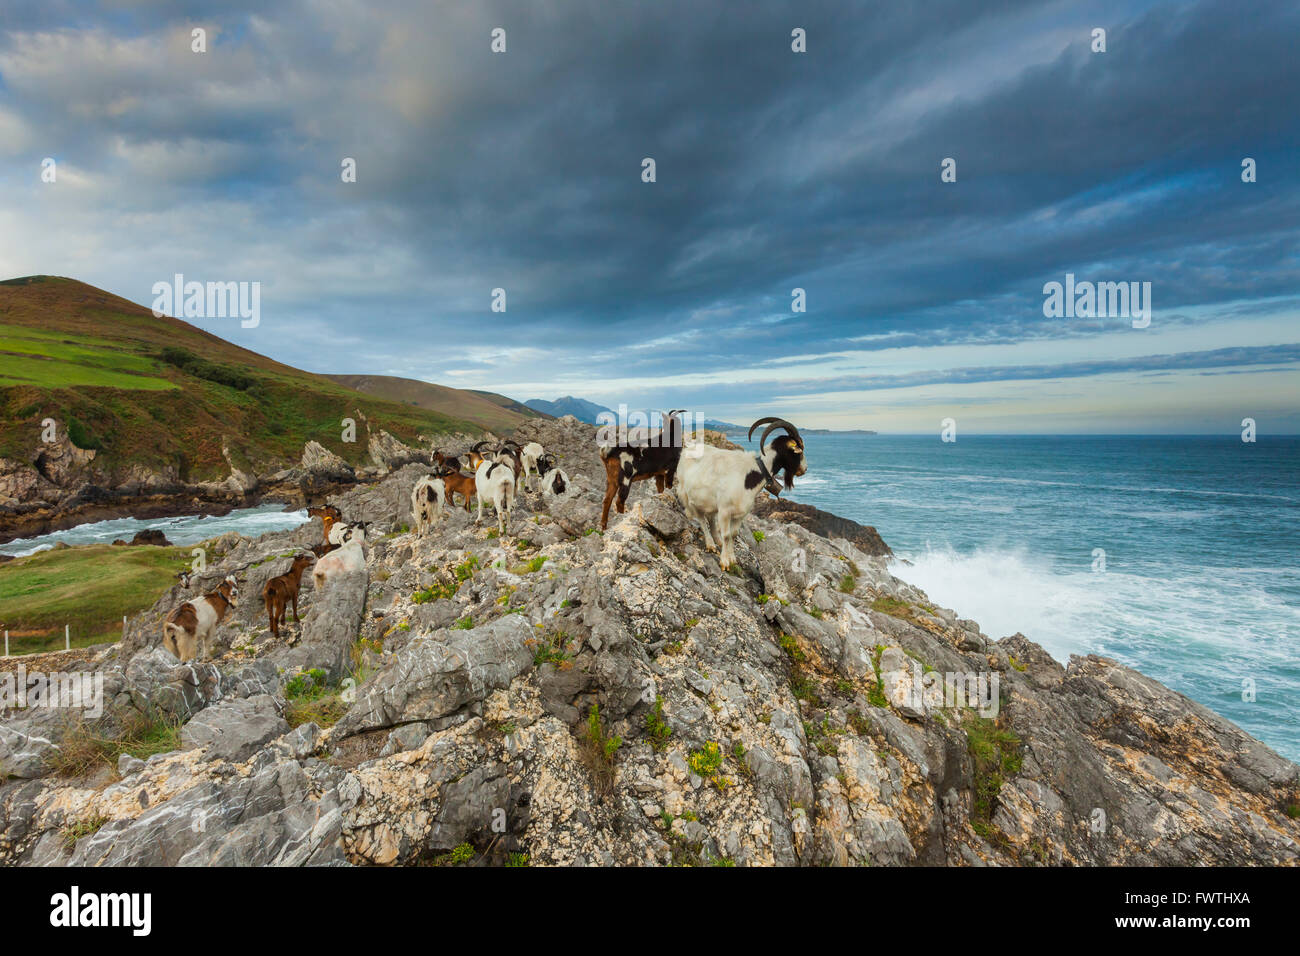 Asturias coast near Llanes, Asturias, Spain. Stock Photo